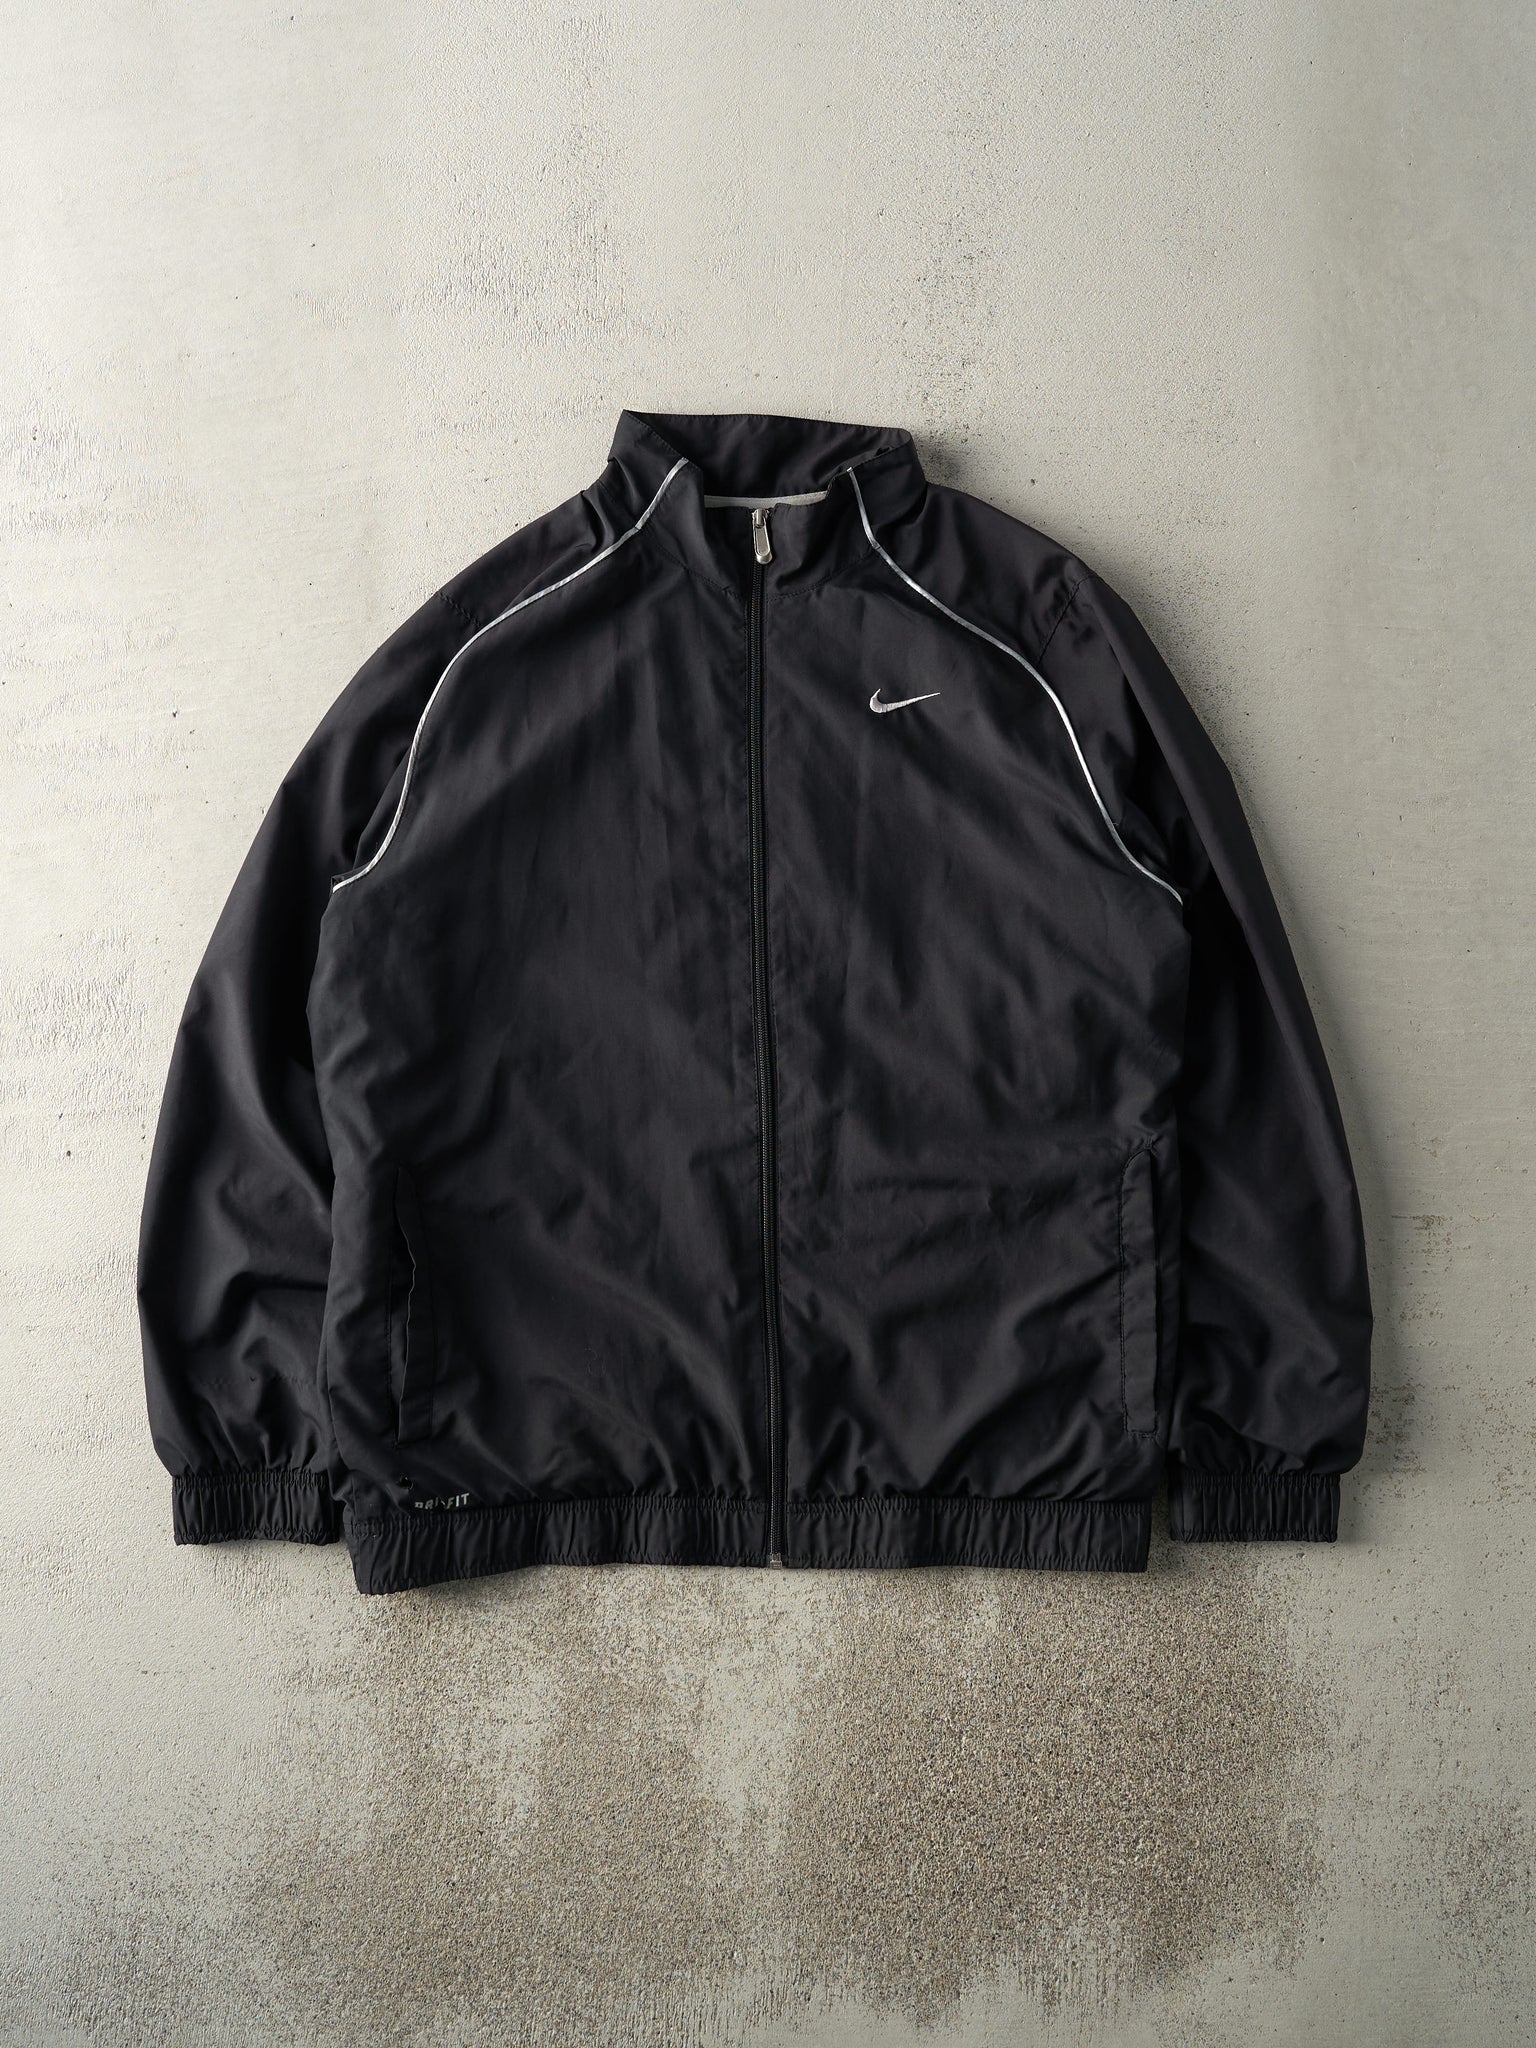 Vintage Y2K Black Nike Dri-Fit Zip Up Jacket (M)